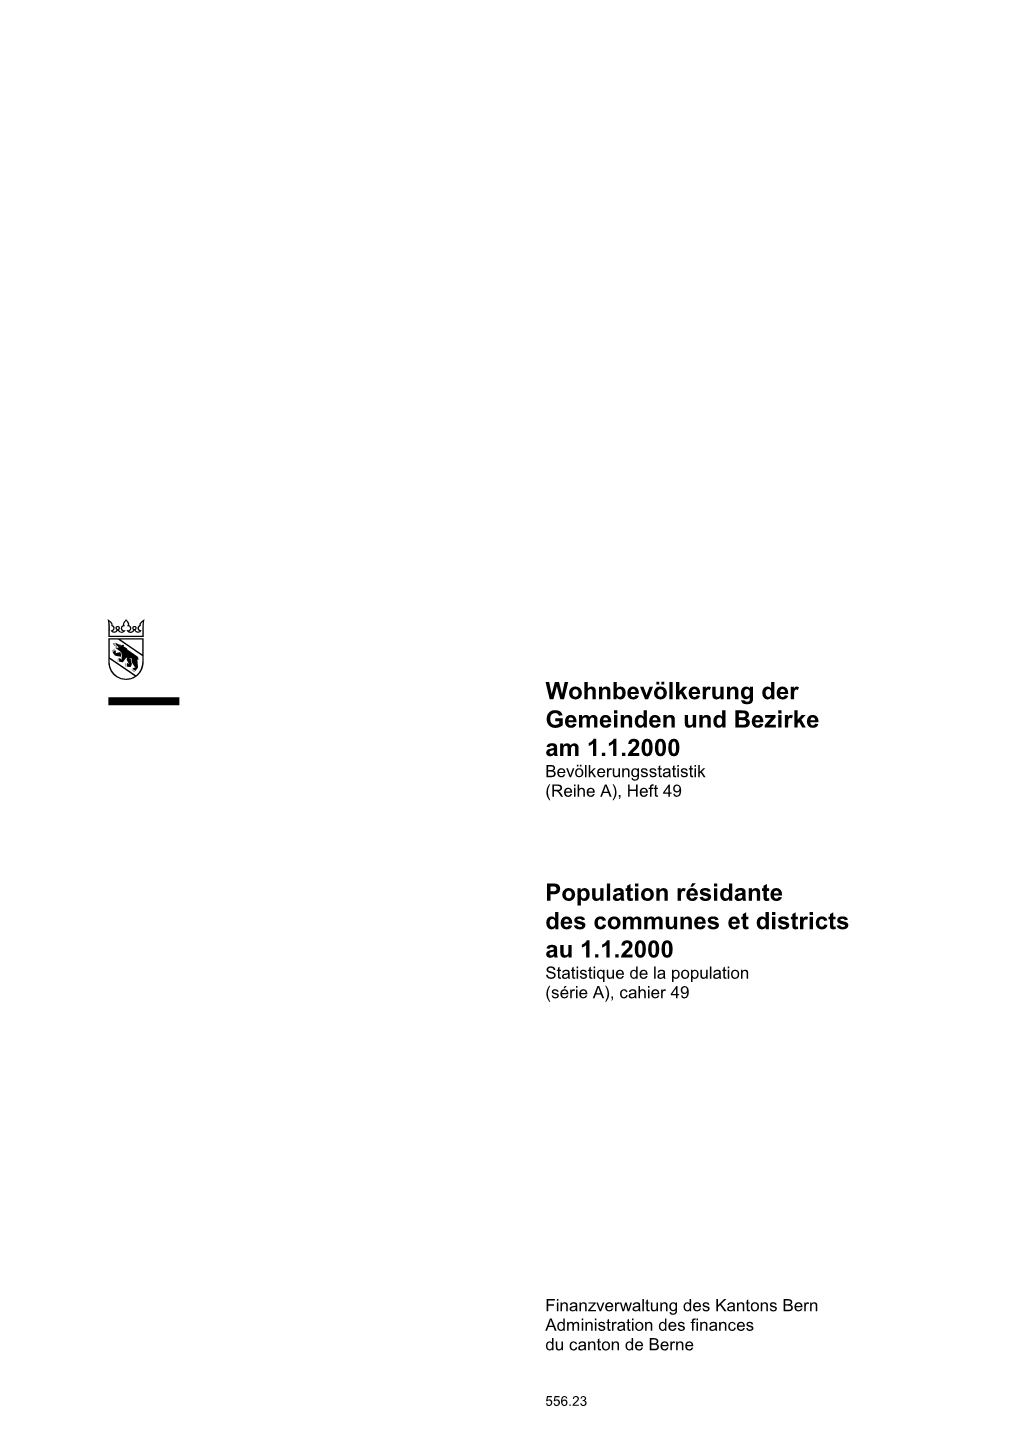 Population Résidante Des Communes Et Districts Au 1.1.2000 Statistique De La Population (Série A), Cahier 49